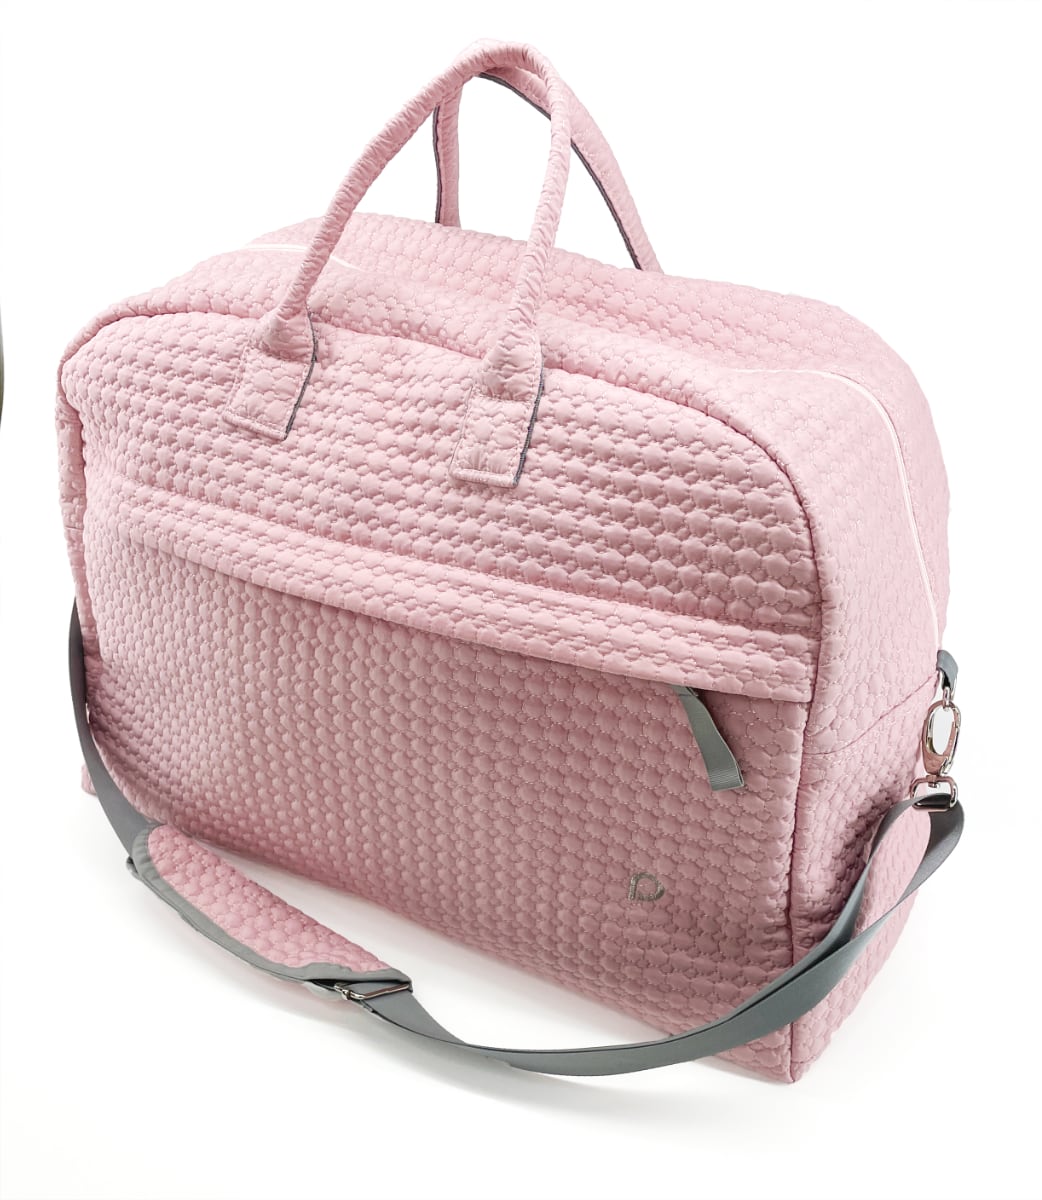 kliknutít zobrazíte maximální velikost obrázku cestovní taška Small Pink Comb